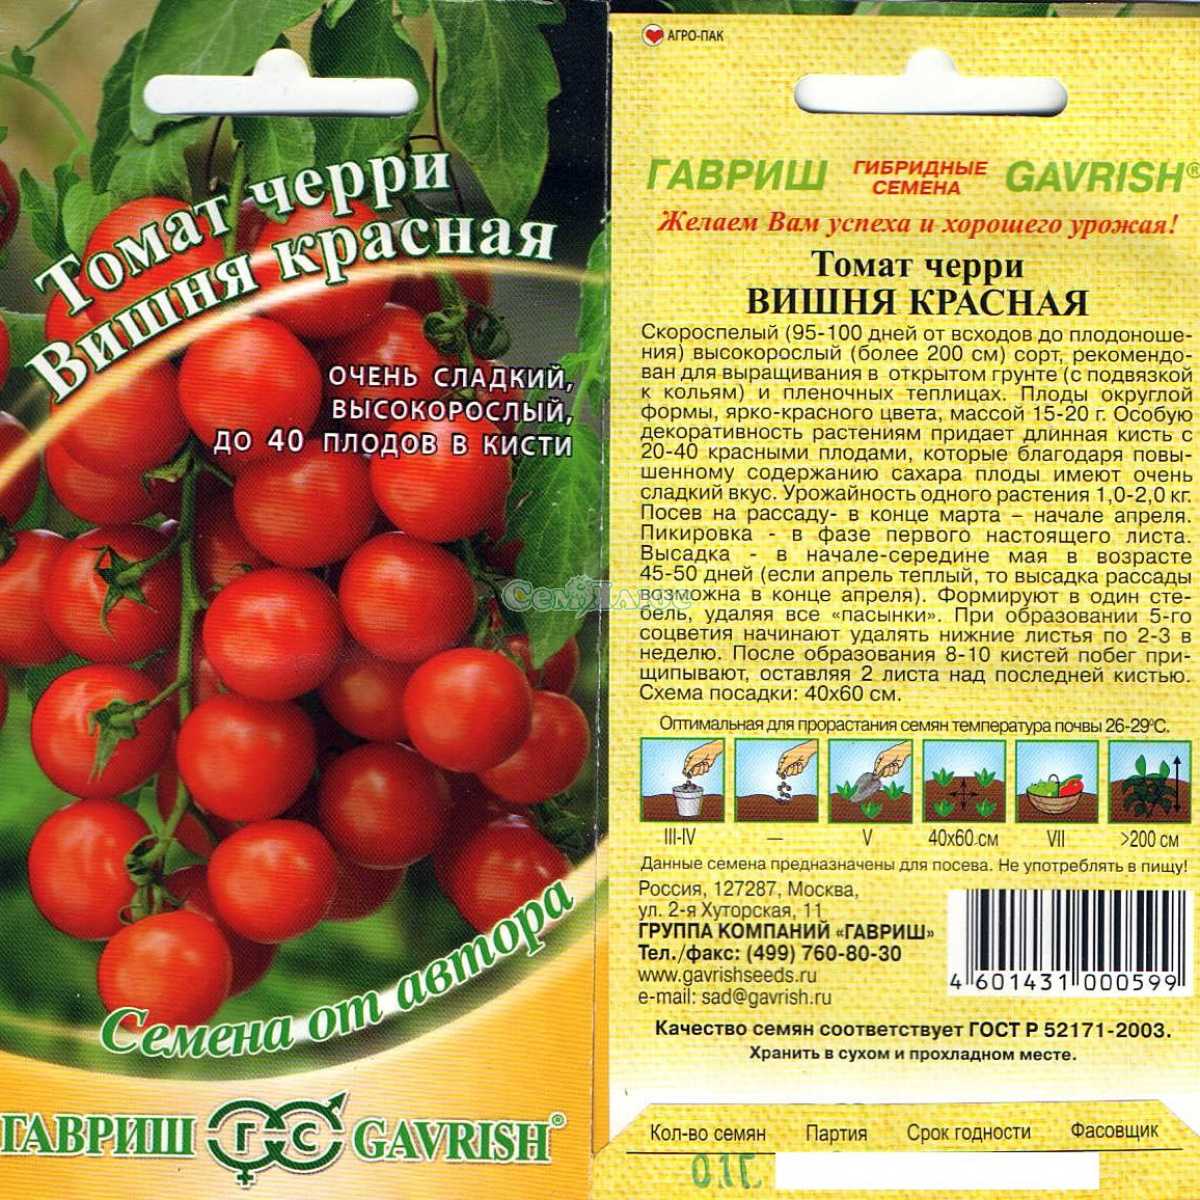 Томат ракета: особенности выращивание сорта, описание среднеспелых помидоров, отзывы и фото огородников